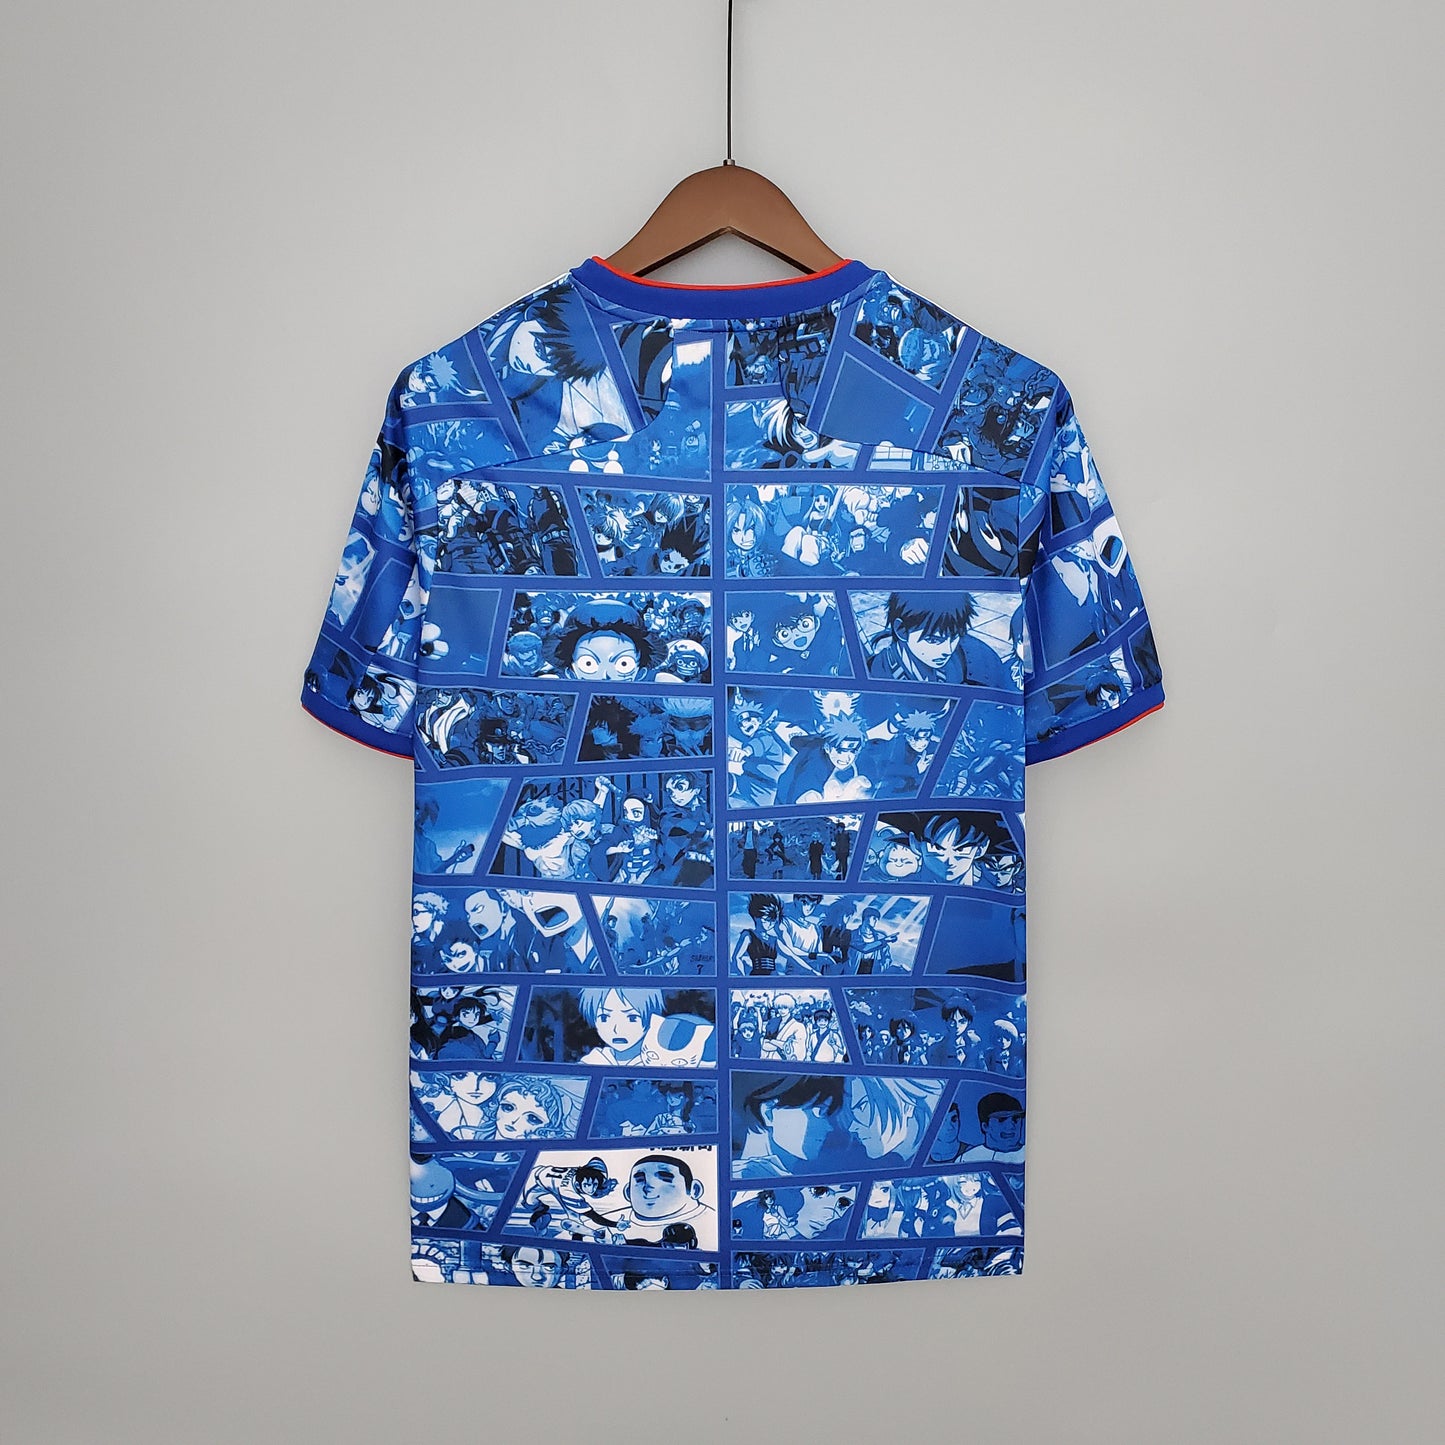 Japan x Anime Shirt Blue